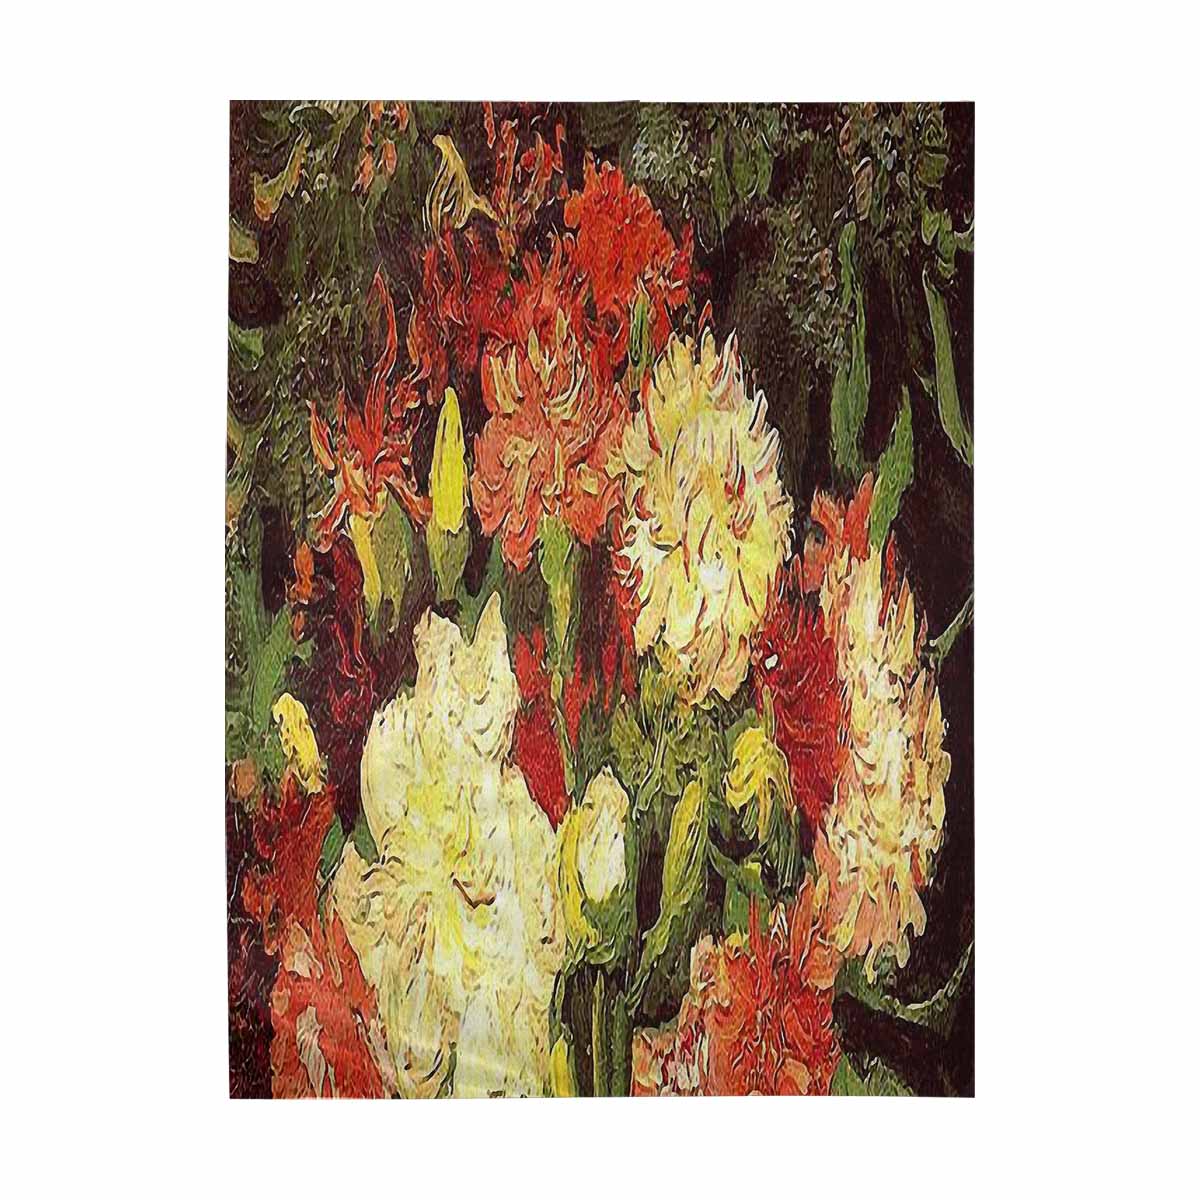 Vintage floral TAPESTRY, LARGE 60 x 80 in, Vertical, Design 33